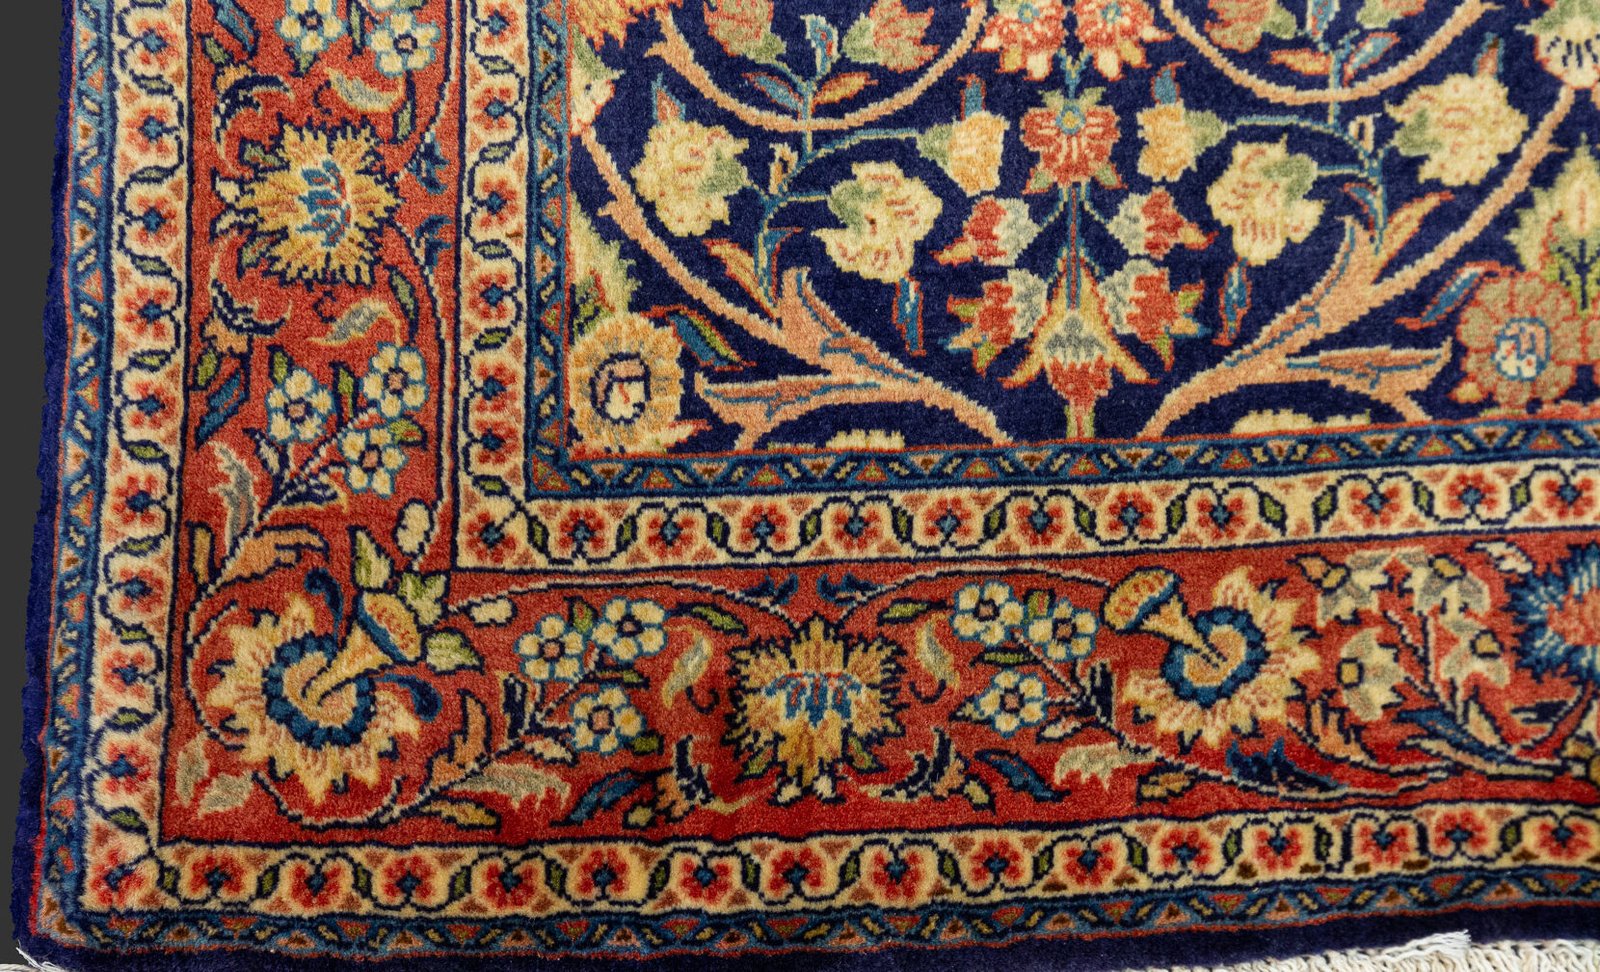 山形緞通（だんつう）の絨毯は、糸づくりに始まり、染めや織りまで一貫生産のこだわりの絨毯が人気の老舗ブランド。  ひとつひとつ職人の技術と思いを込めて編まれる絨毯は、まさに絵画と変わらない芸術品そのもの。  日本生まれの絨毯らしく、桜や松の木などの日本モチーフデザインが多く、淡く繊細な色合いは長年にわたって使えるものばかりです。